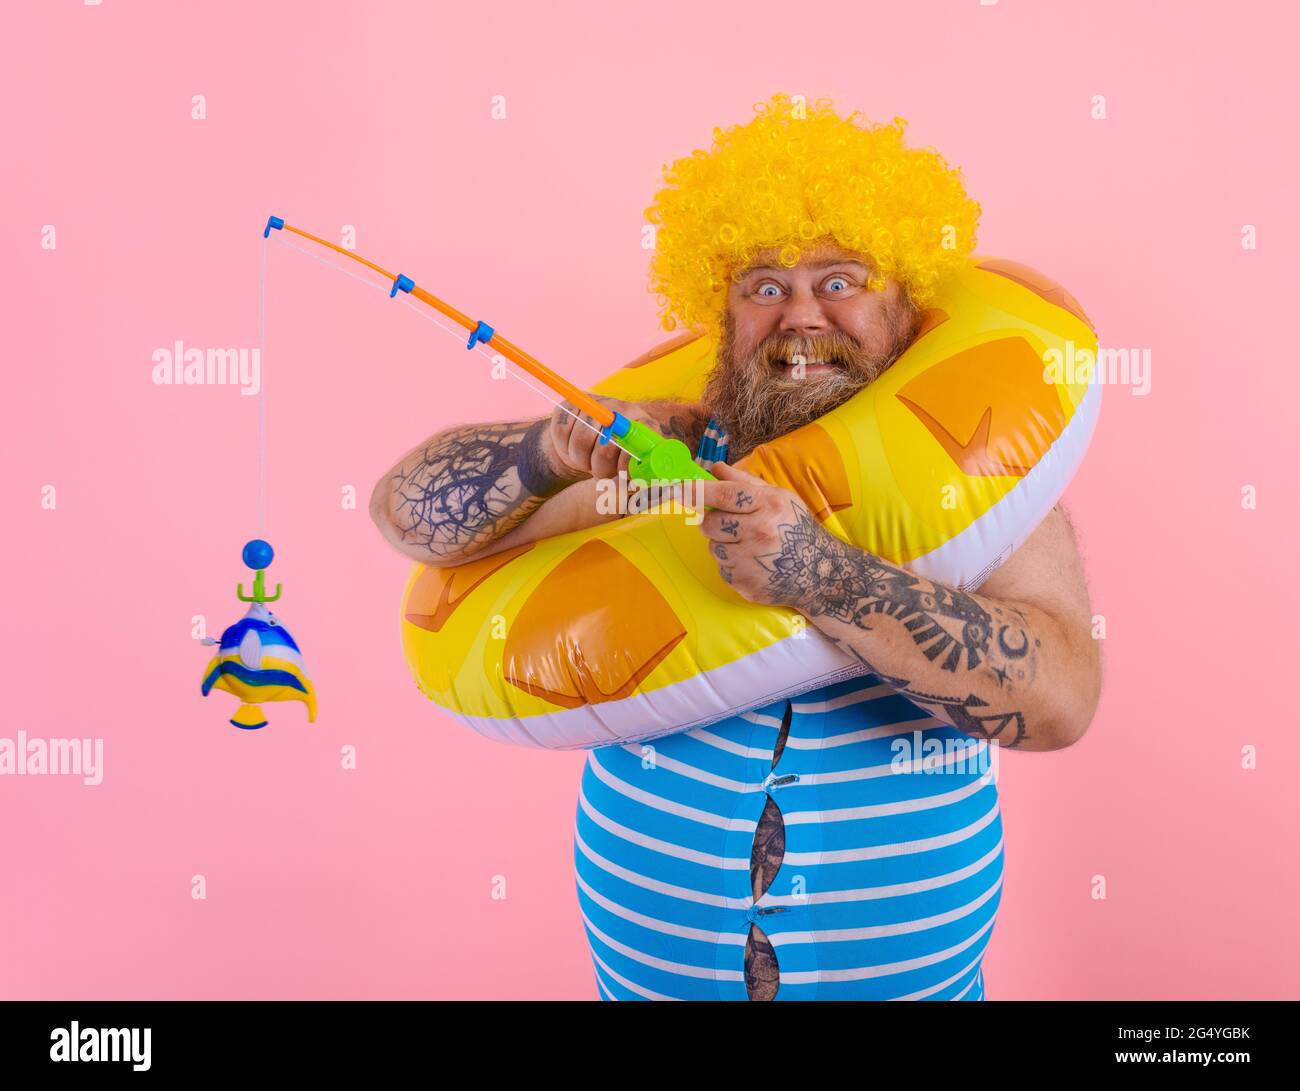 FAT Happy man avec perruque dans la tête joue avec la canne à pêche Photo  Stock - Alamy